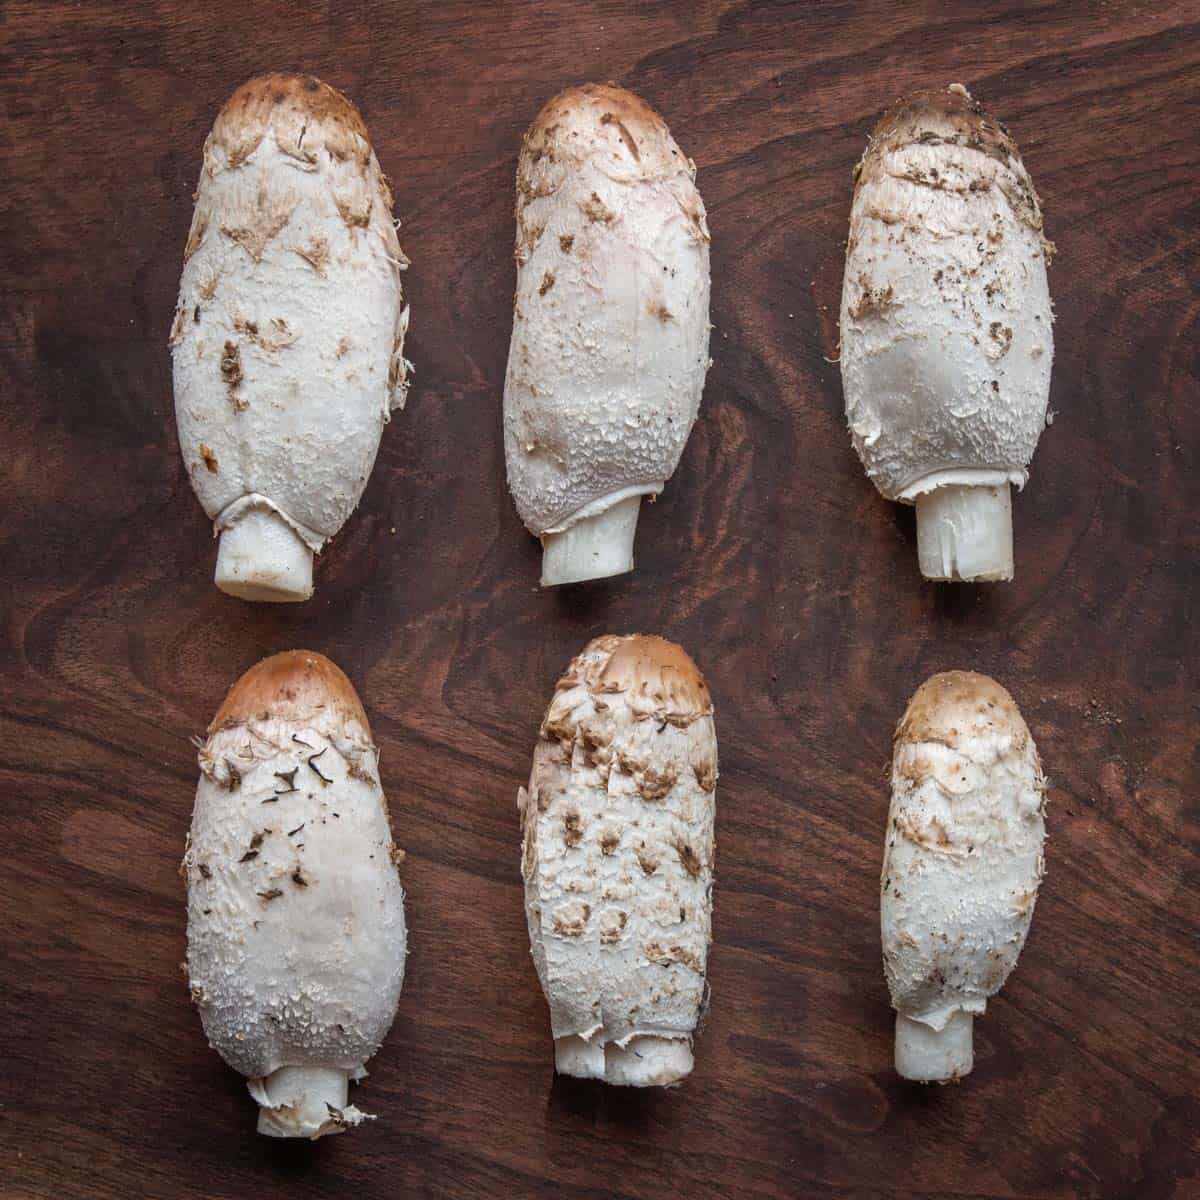 shaggy mane mushrooms on a board 